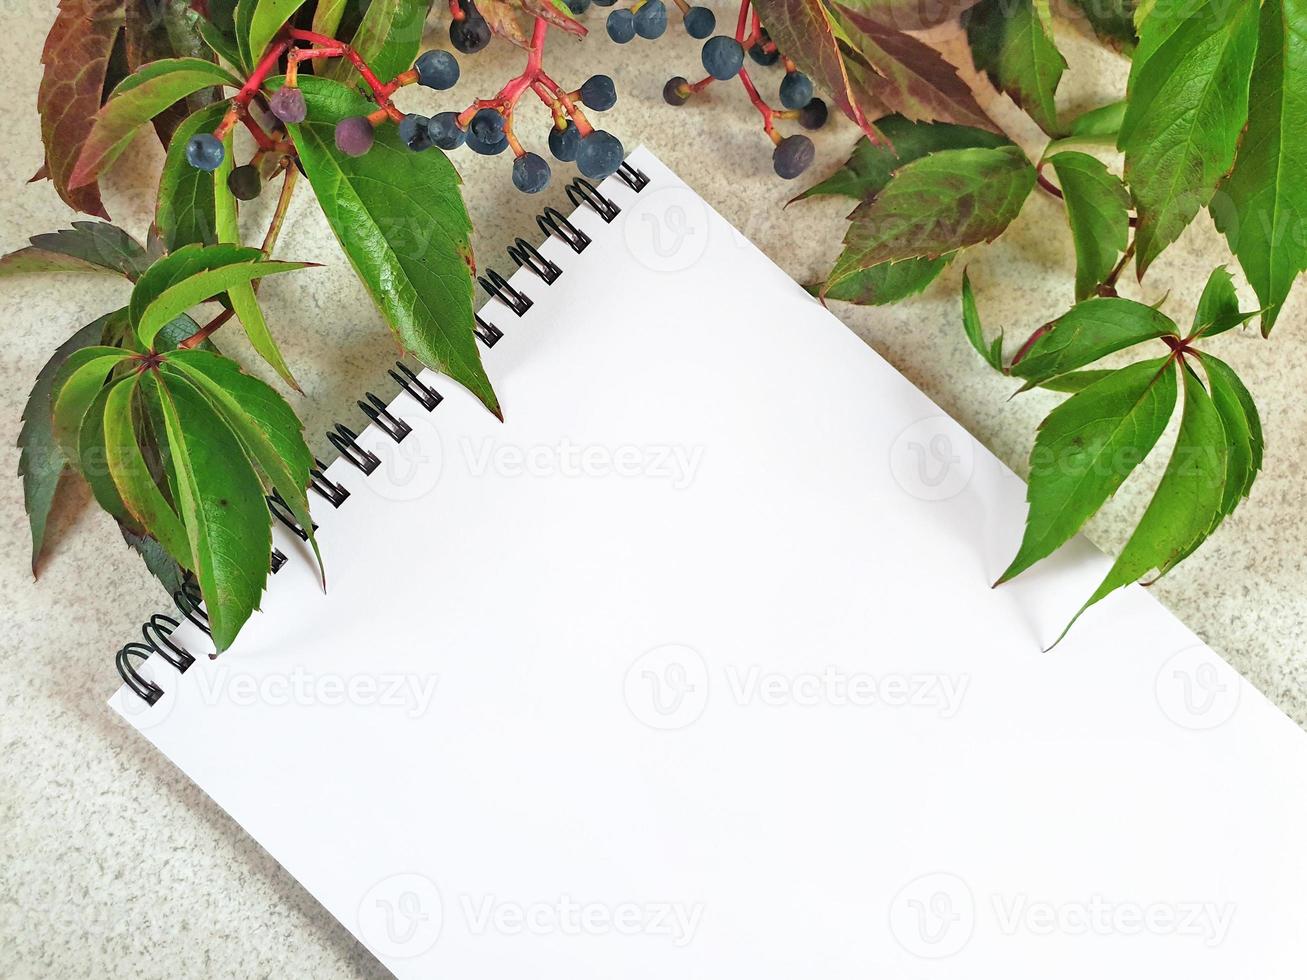 papel blanco vacío en blanco, bloc de notas en espiral sobre una superficie de mesa granulada clara con una rama de uva silvestre arriba. hojas verdes de uva virgen con bayas de color azul oscuro. composición diagonal floral de otoño. foto